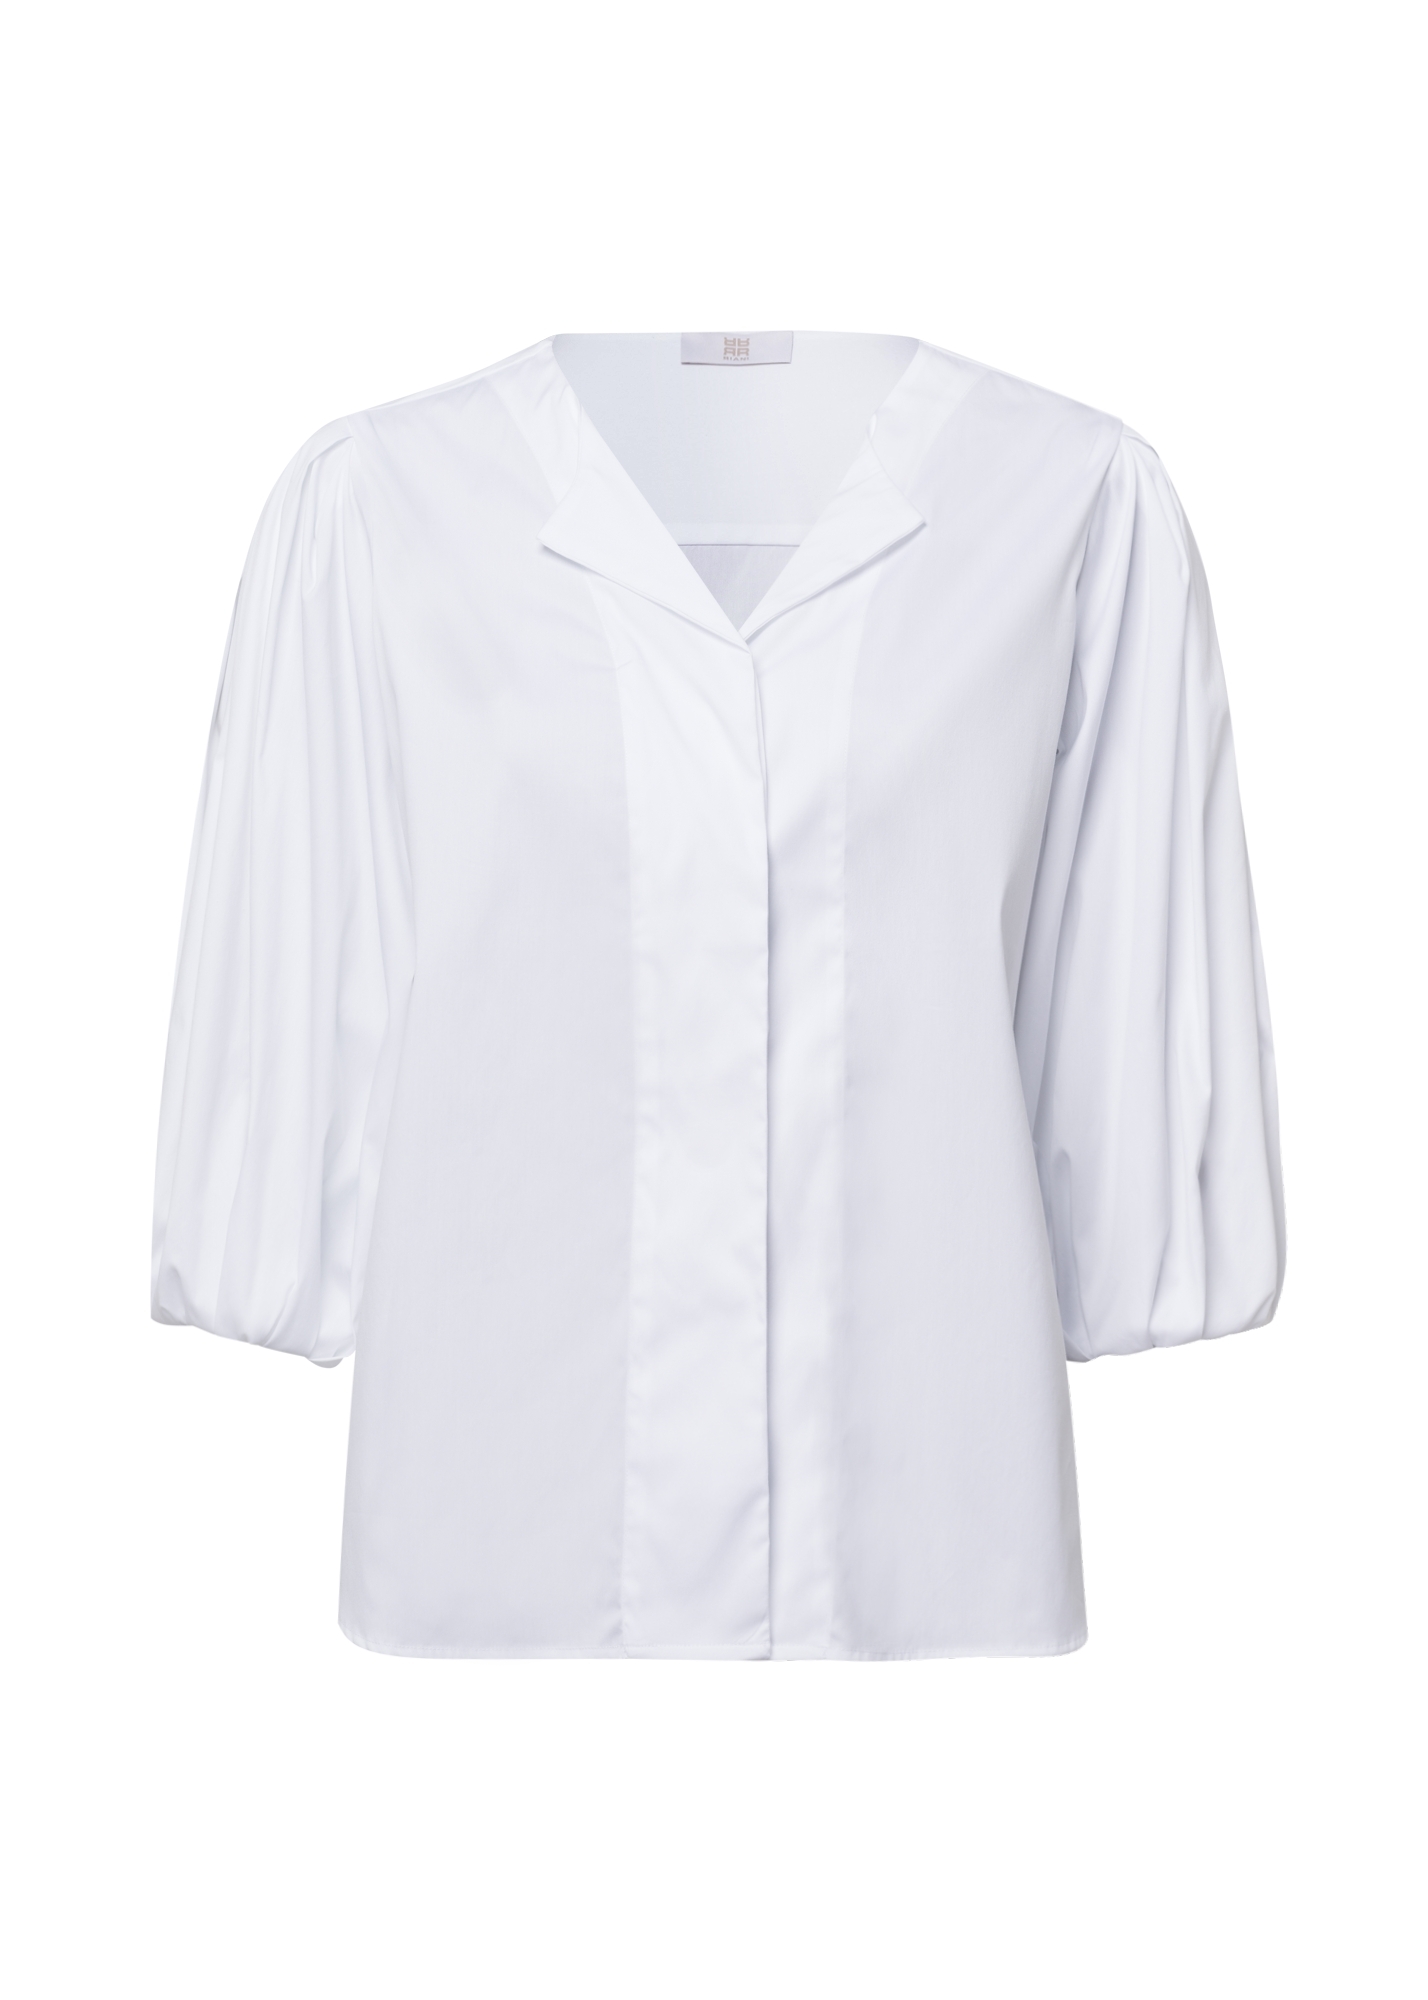 Koszula z bufiastymi rękawami 3/4, gumka w rękawie, brak kołnierzyka, kolor biały Riani 135170-2076-100